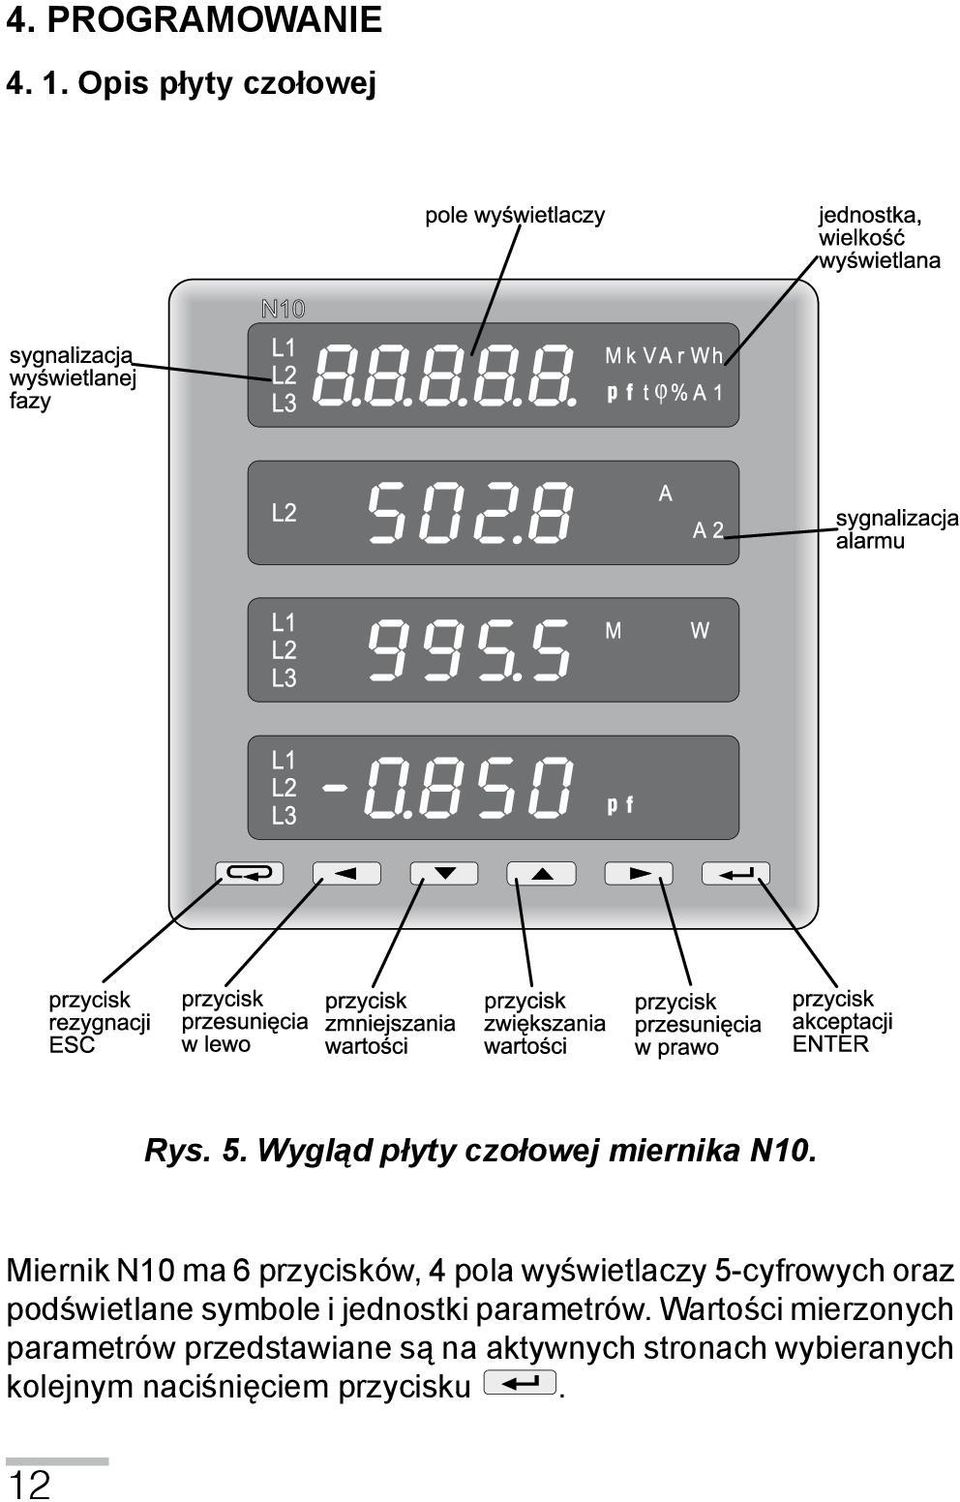 Miernik N10 ma 6 przycisków, 4 pola wyświetlaczy 5-cyfrowych oraz podświetlane